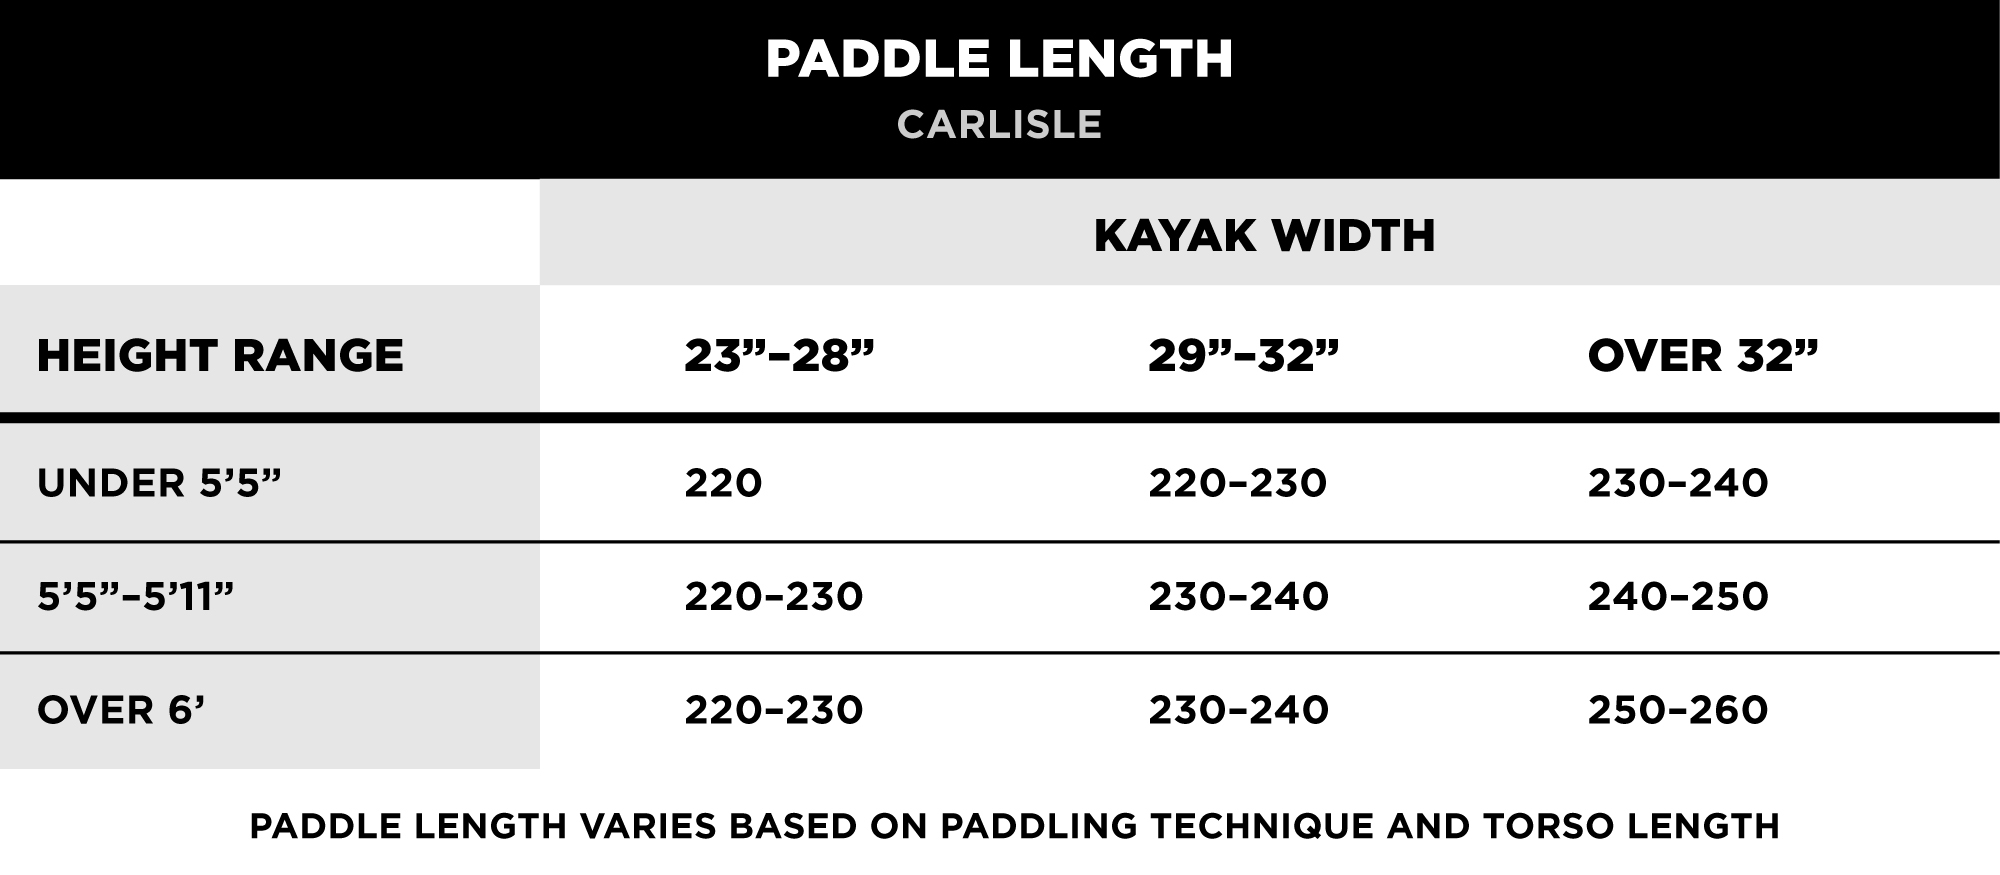 Carlisle Paddle Length Guide